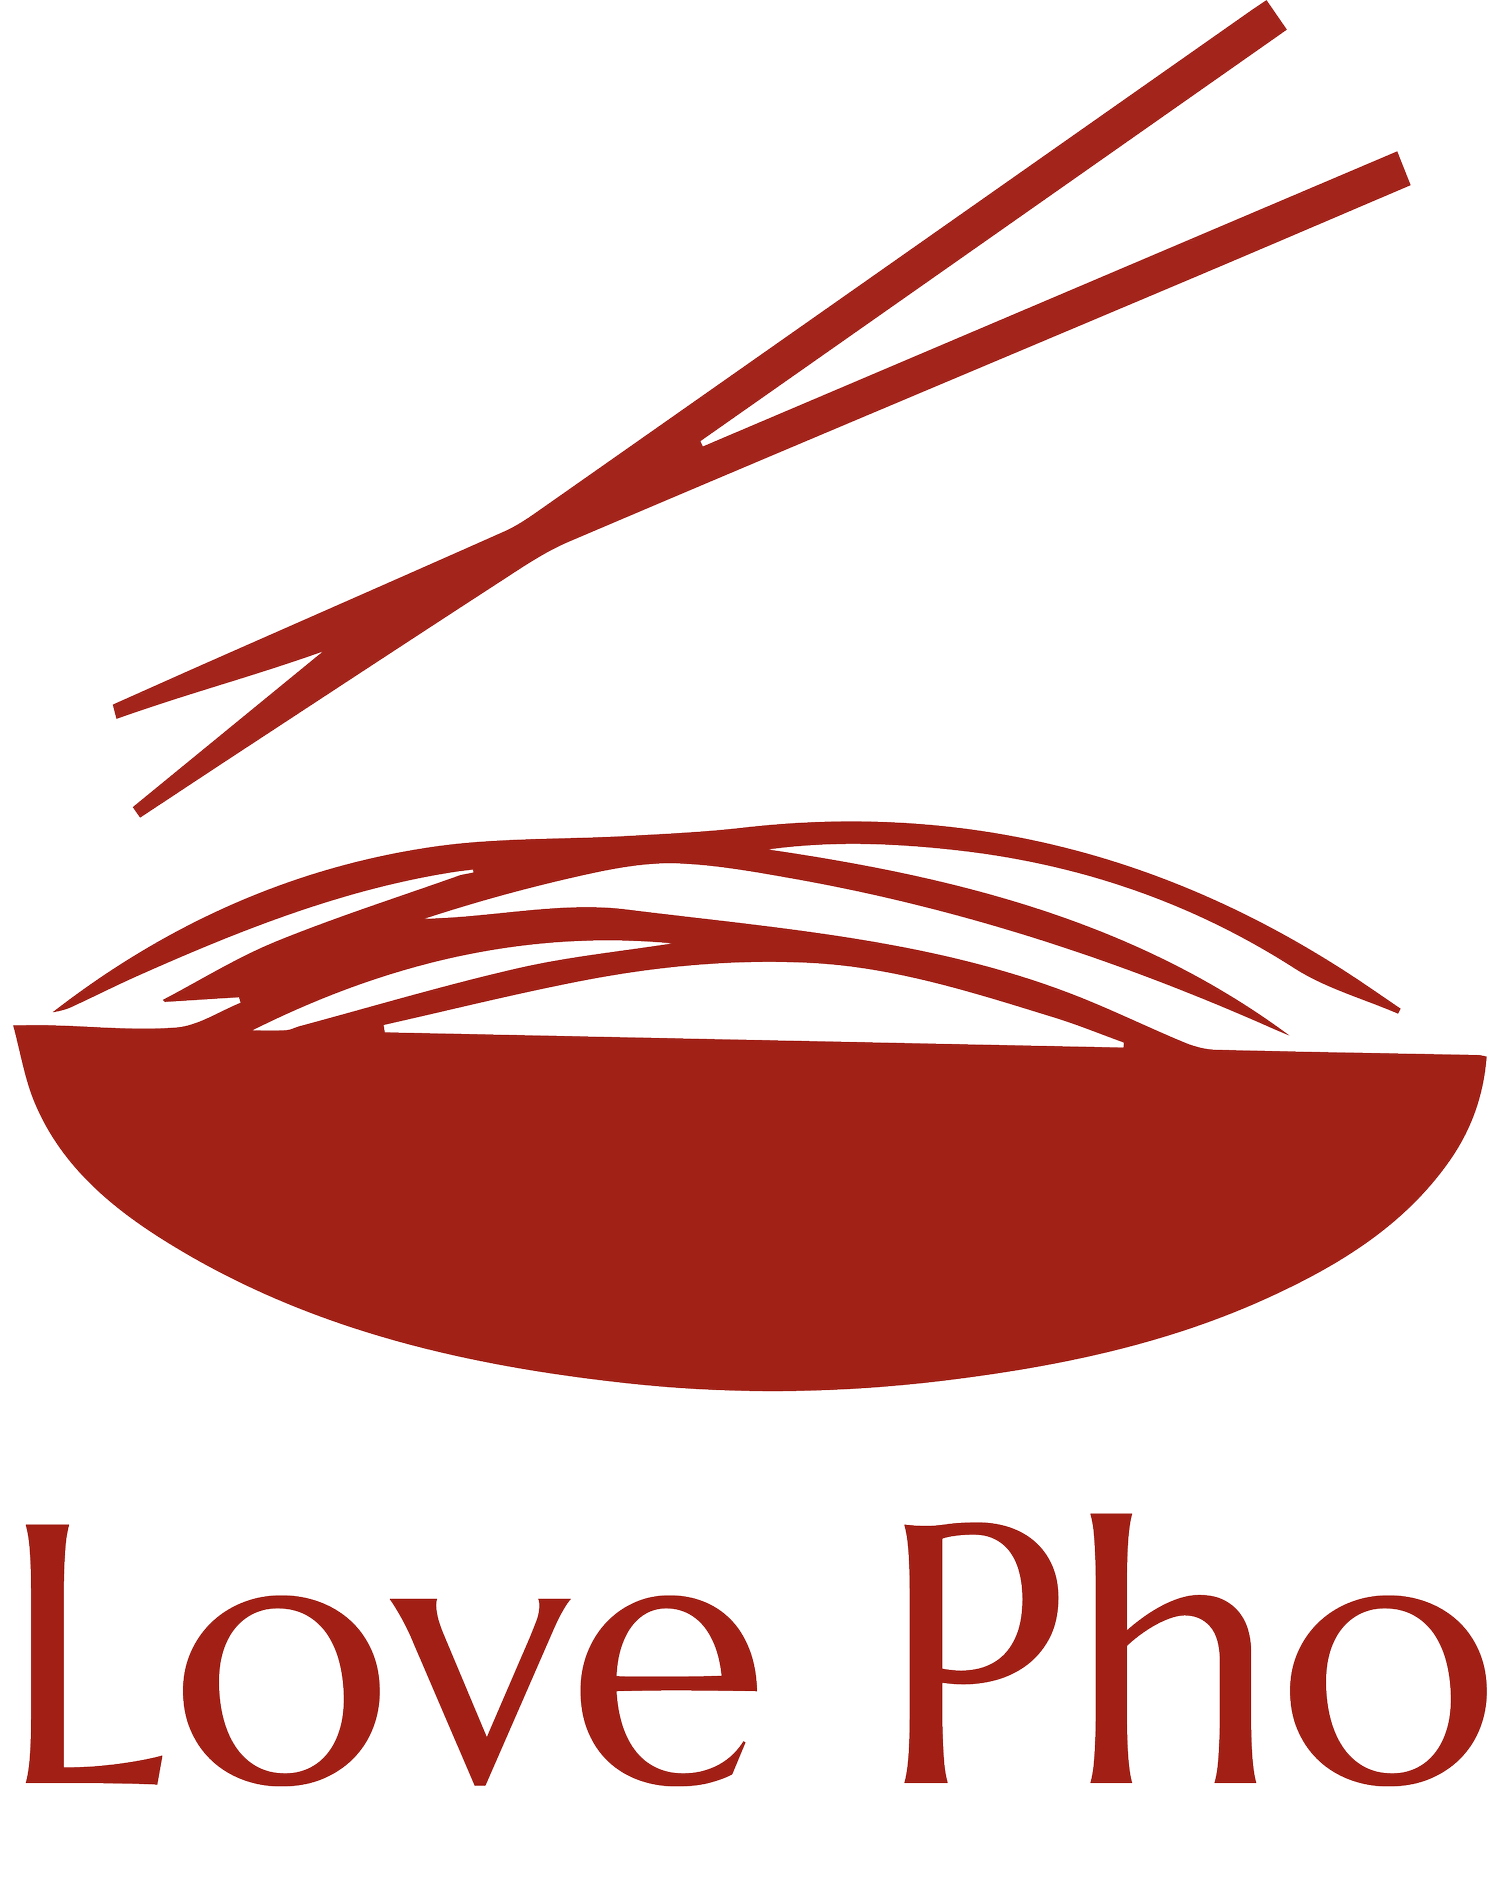 Love Pho Vietnamese Restaurant